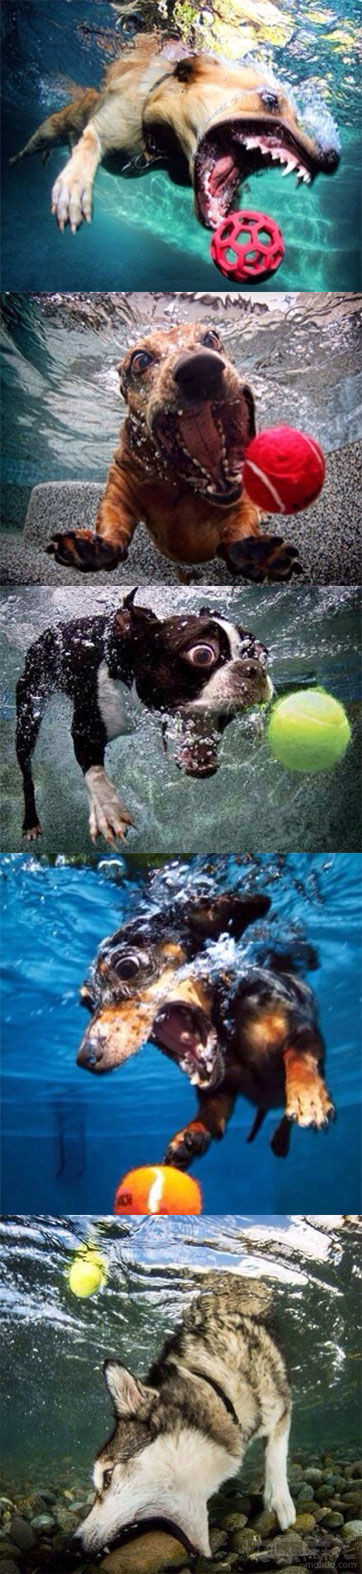 摄影师把狗狗们最爱的玩具扔进水里，在它们去捡的过程中，拍下了这组照片。哈士奇再一次凭借智商，技压群雄……【真替你的智商捉急啊】】